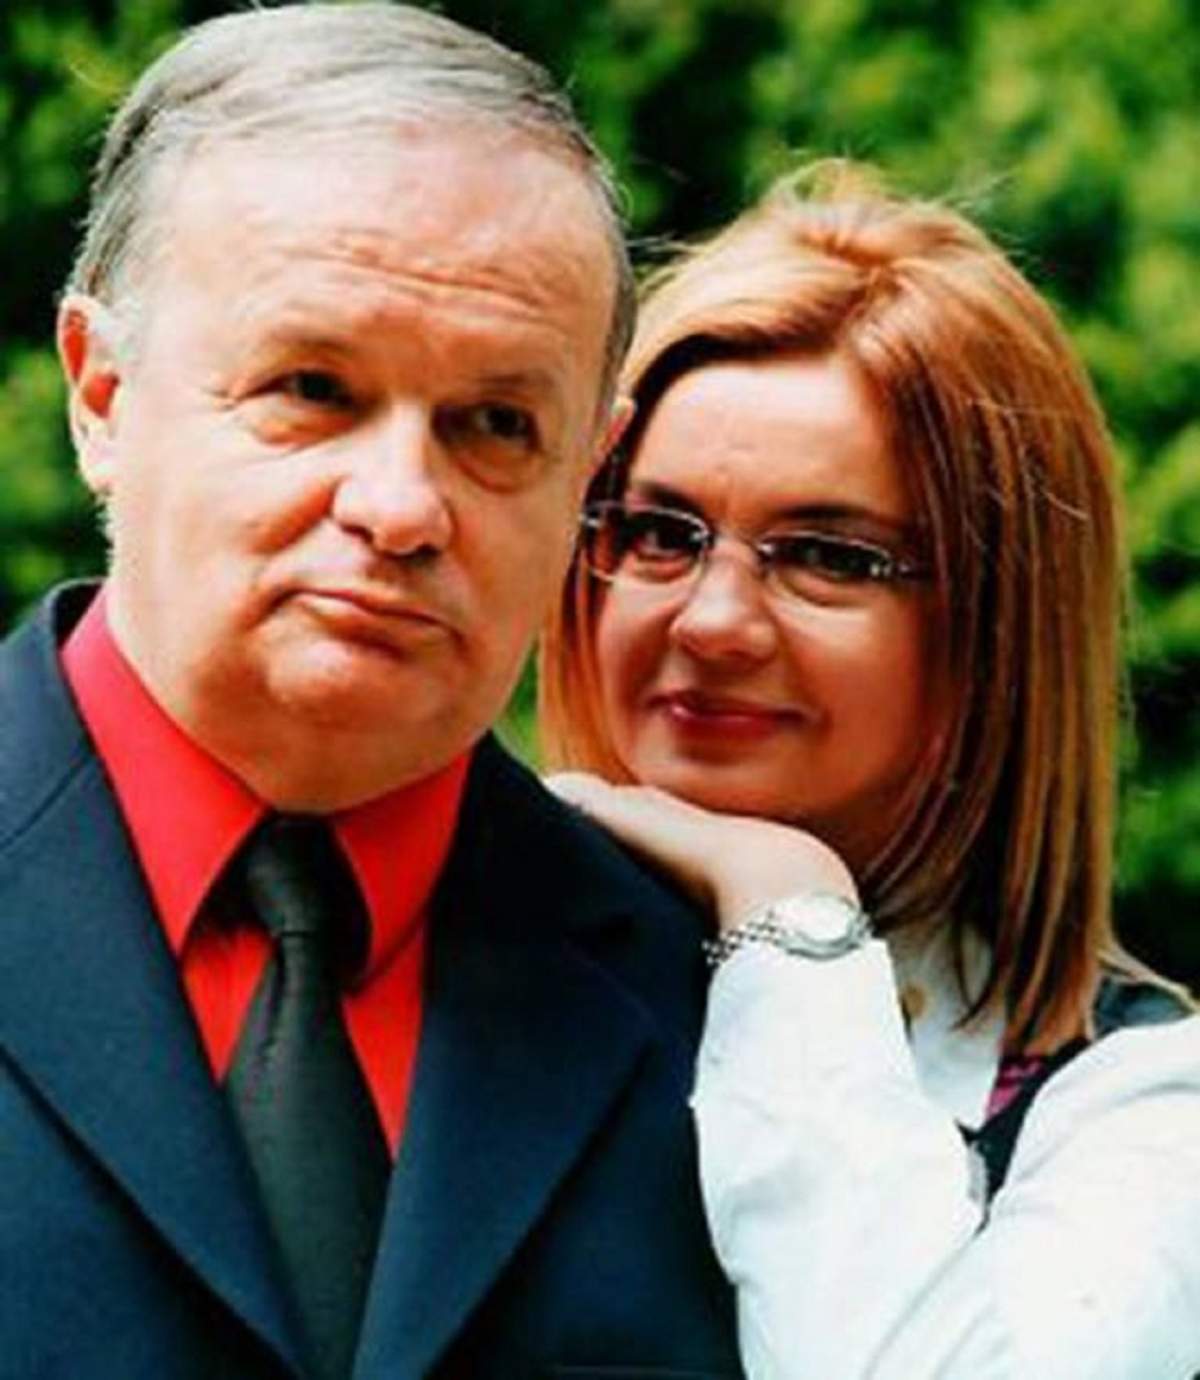 Cristina Ţopescu s-a stins din viaţă în mod misterios. Poliţiştii au deschis un dosar penal pentru moarte suspectă